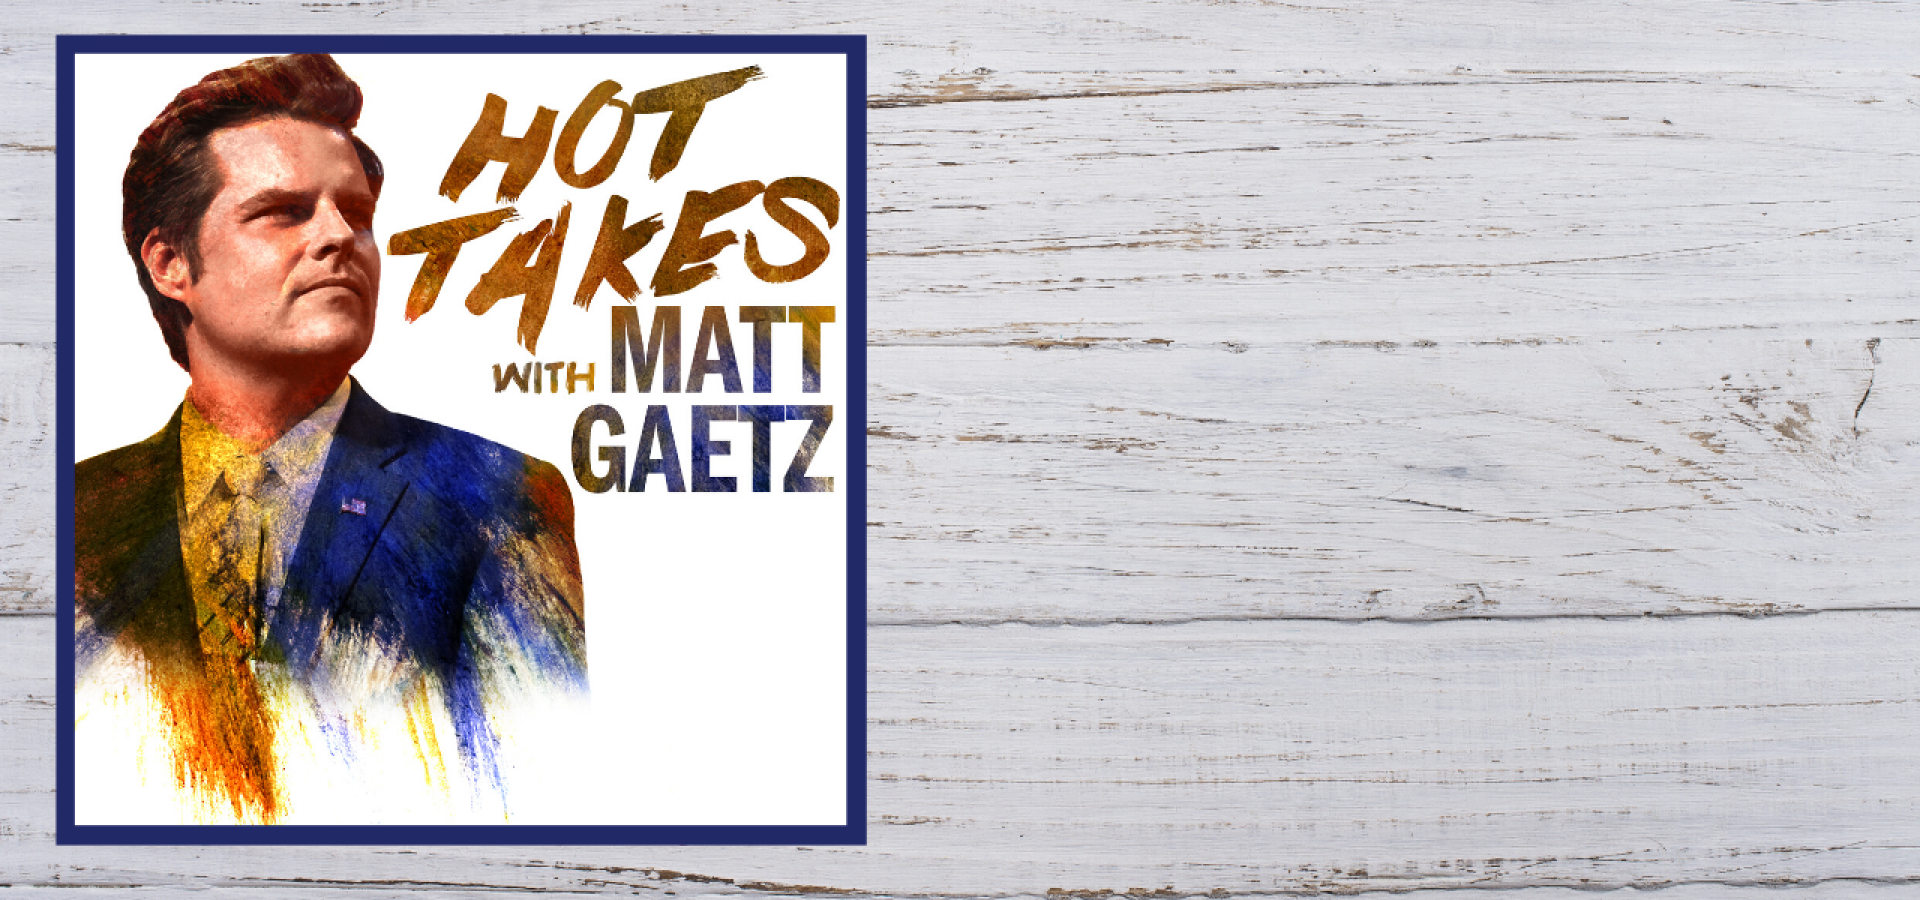 gaetz takes